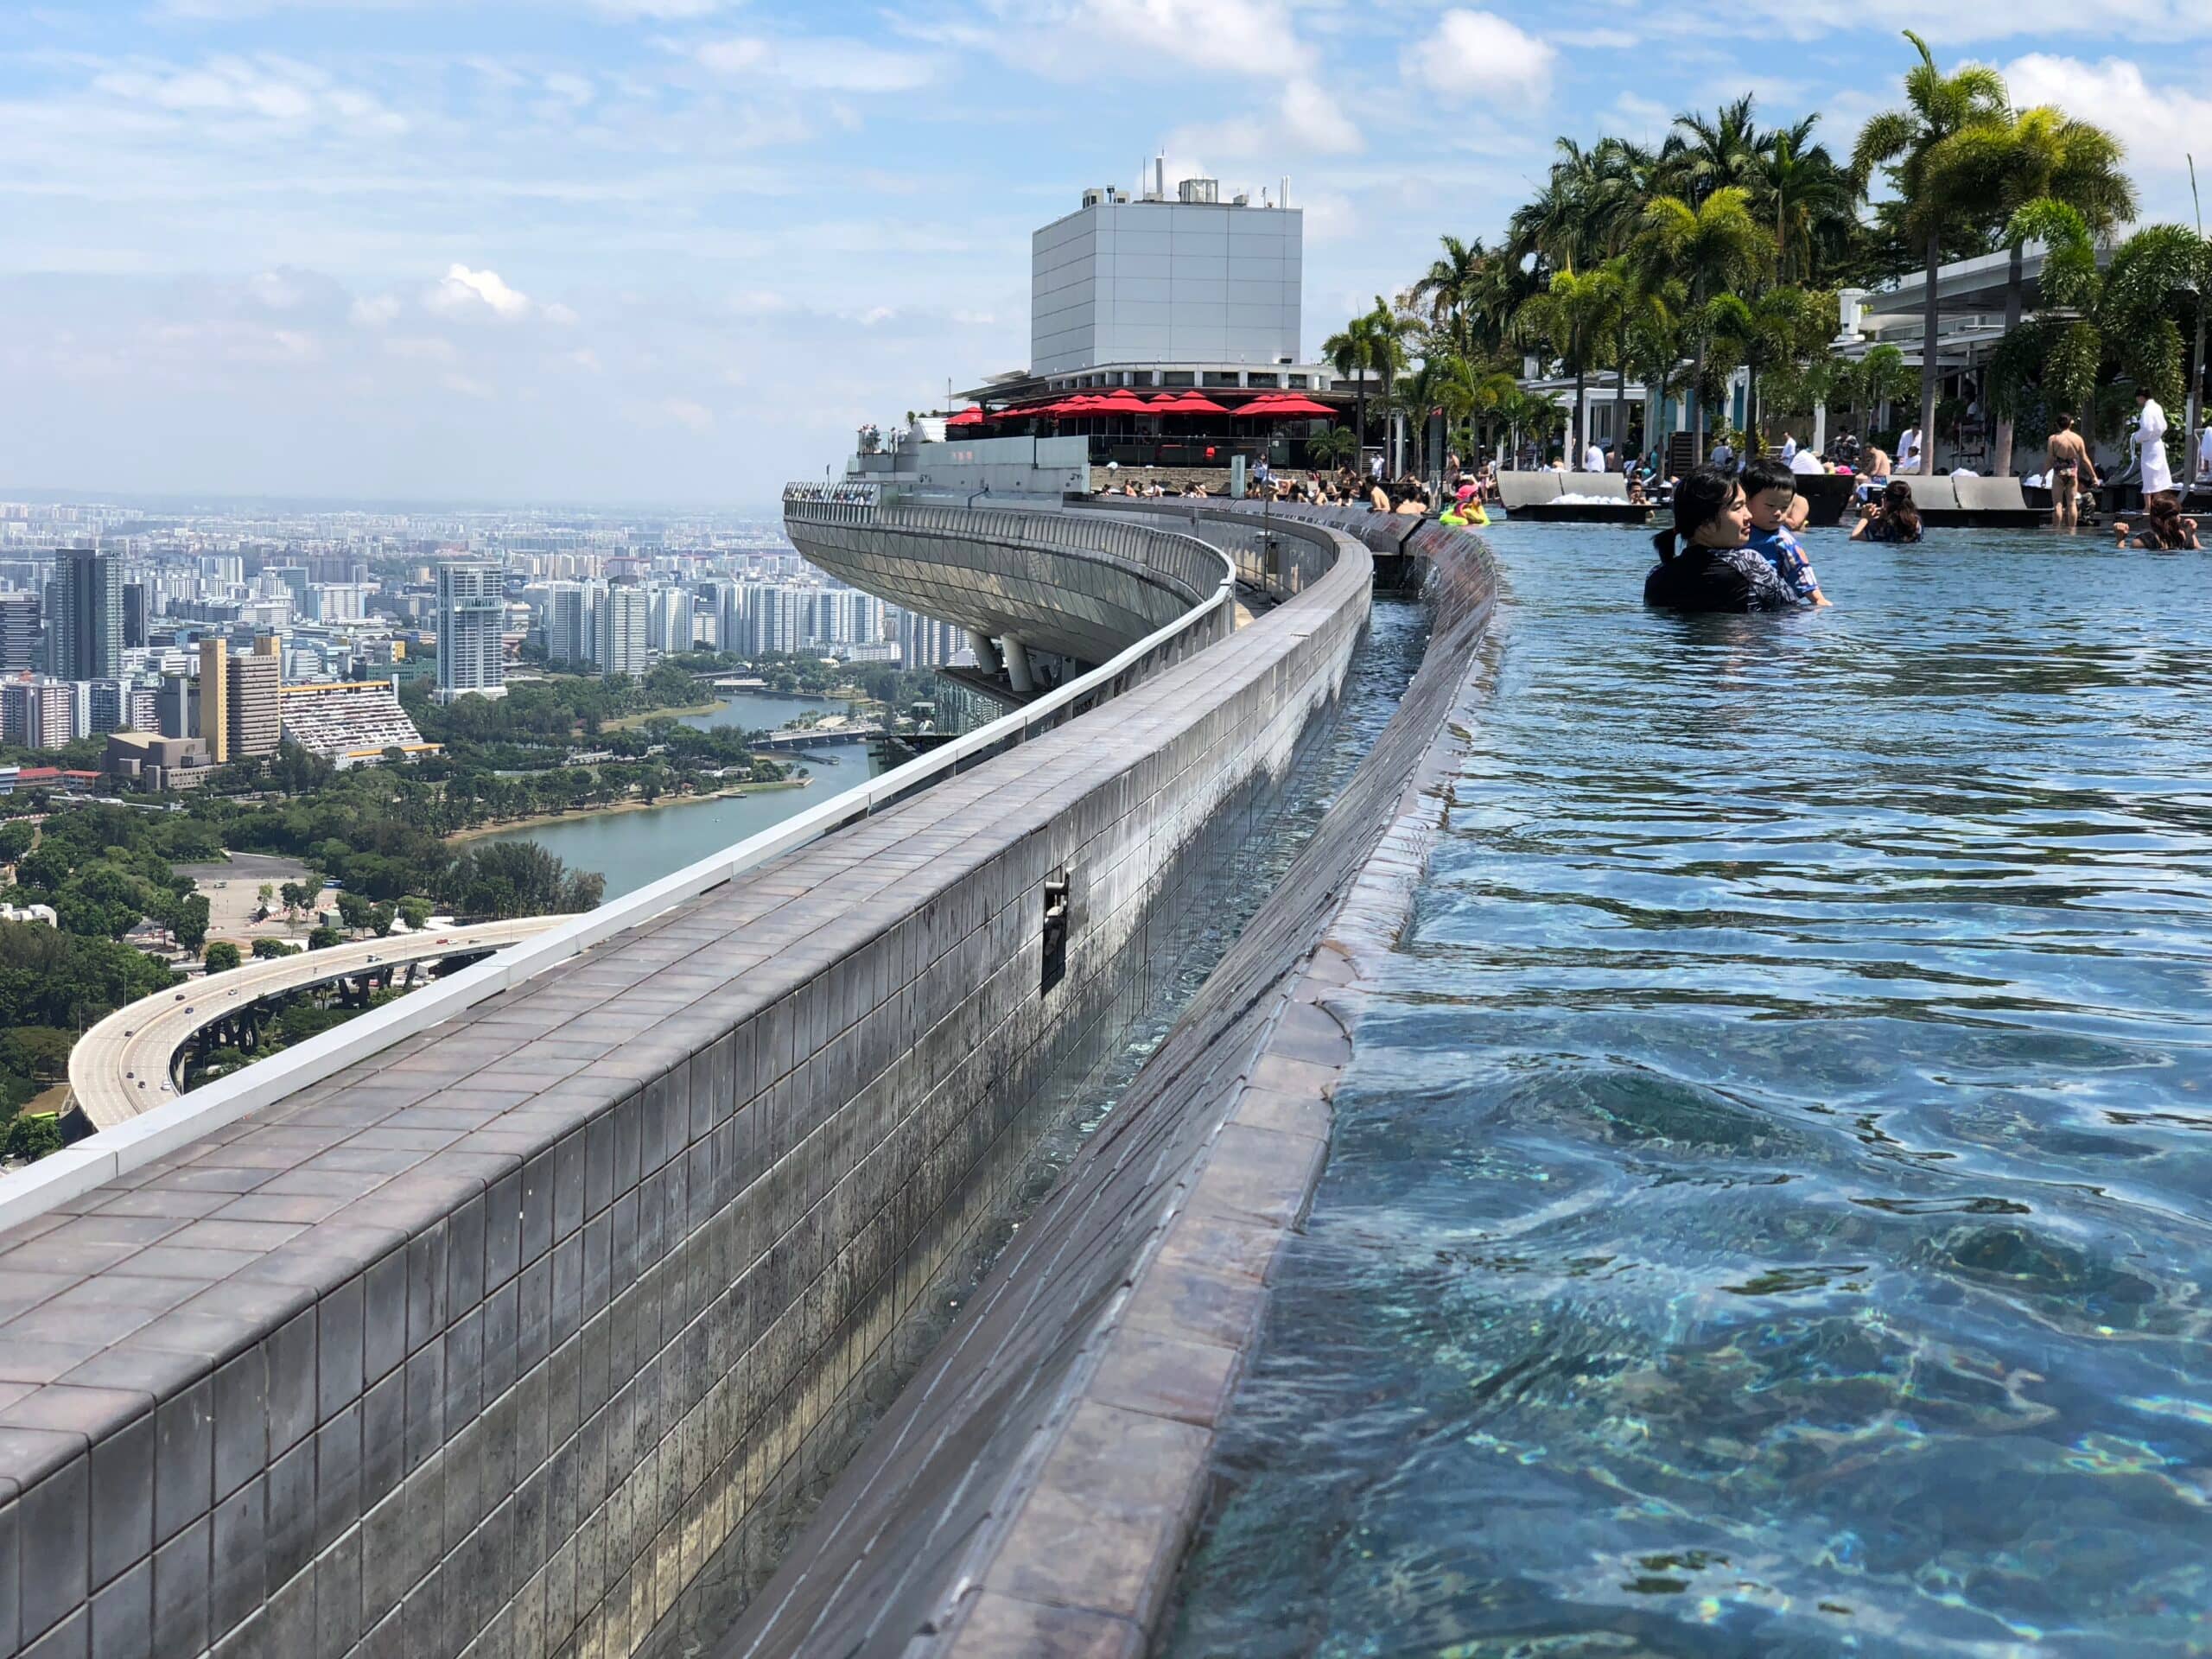 Infinity Pool in Singapur mit spektakulärer Aussicht auf die Stadt